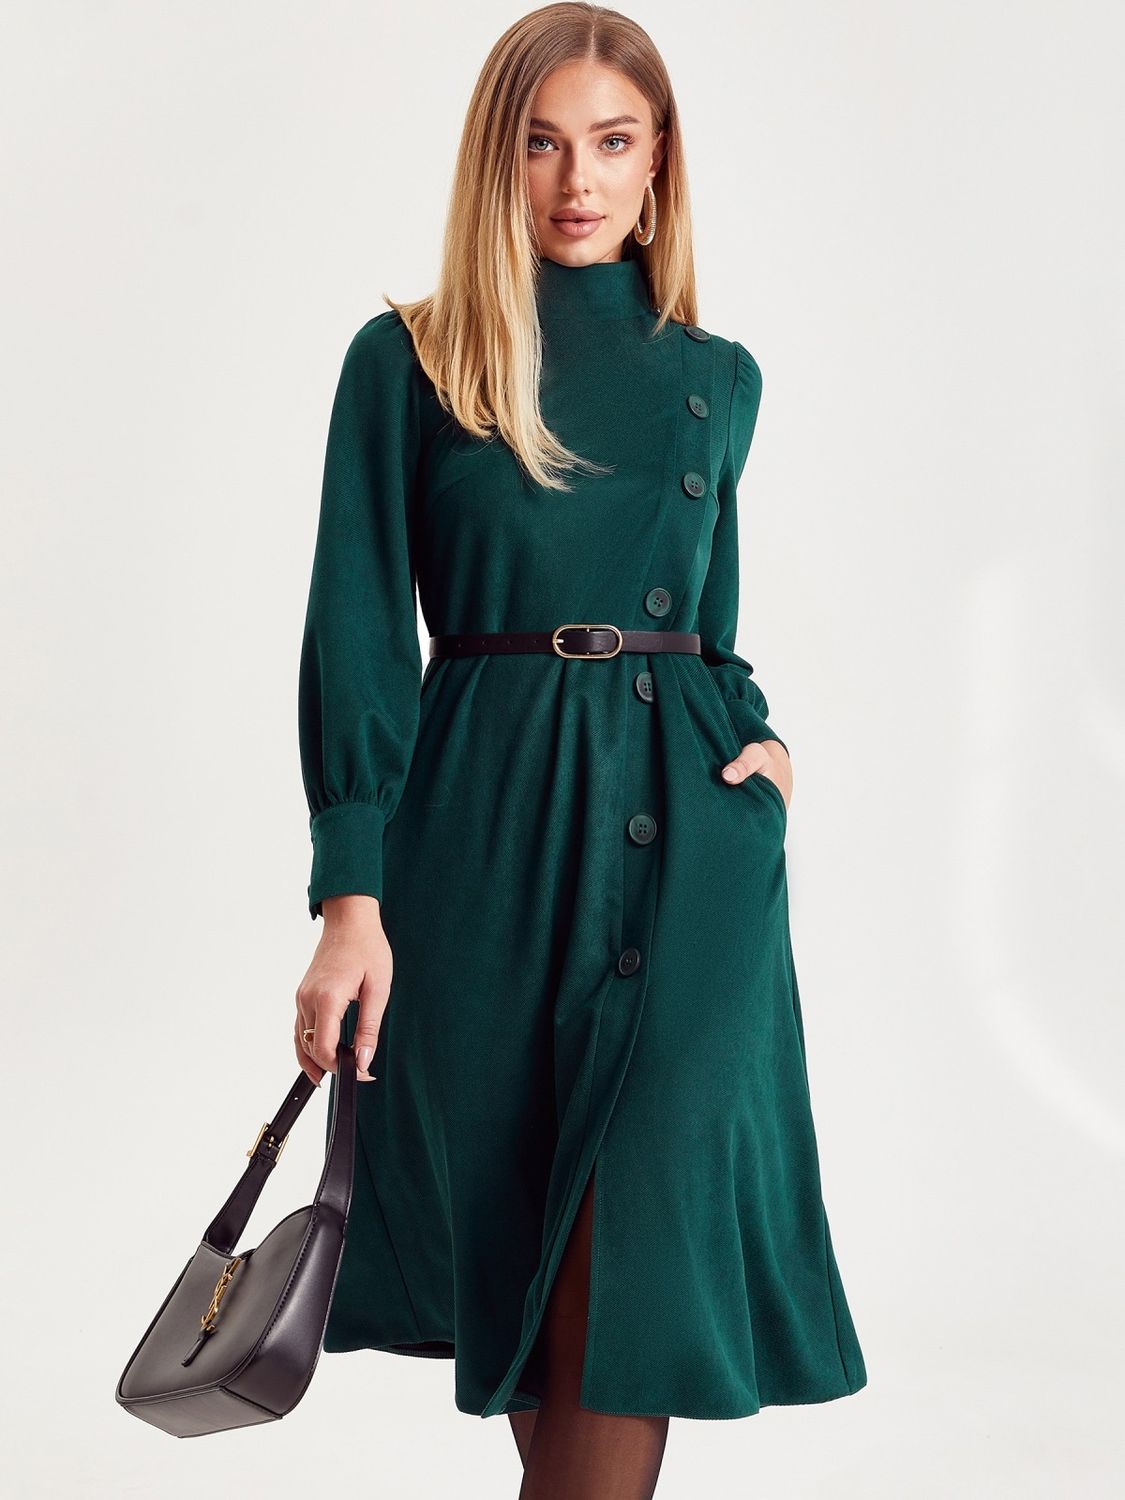 Замшевое платье гольф в деловом стиле зеленое - фото